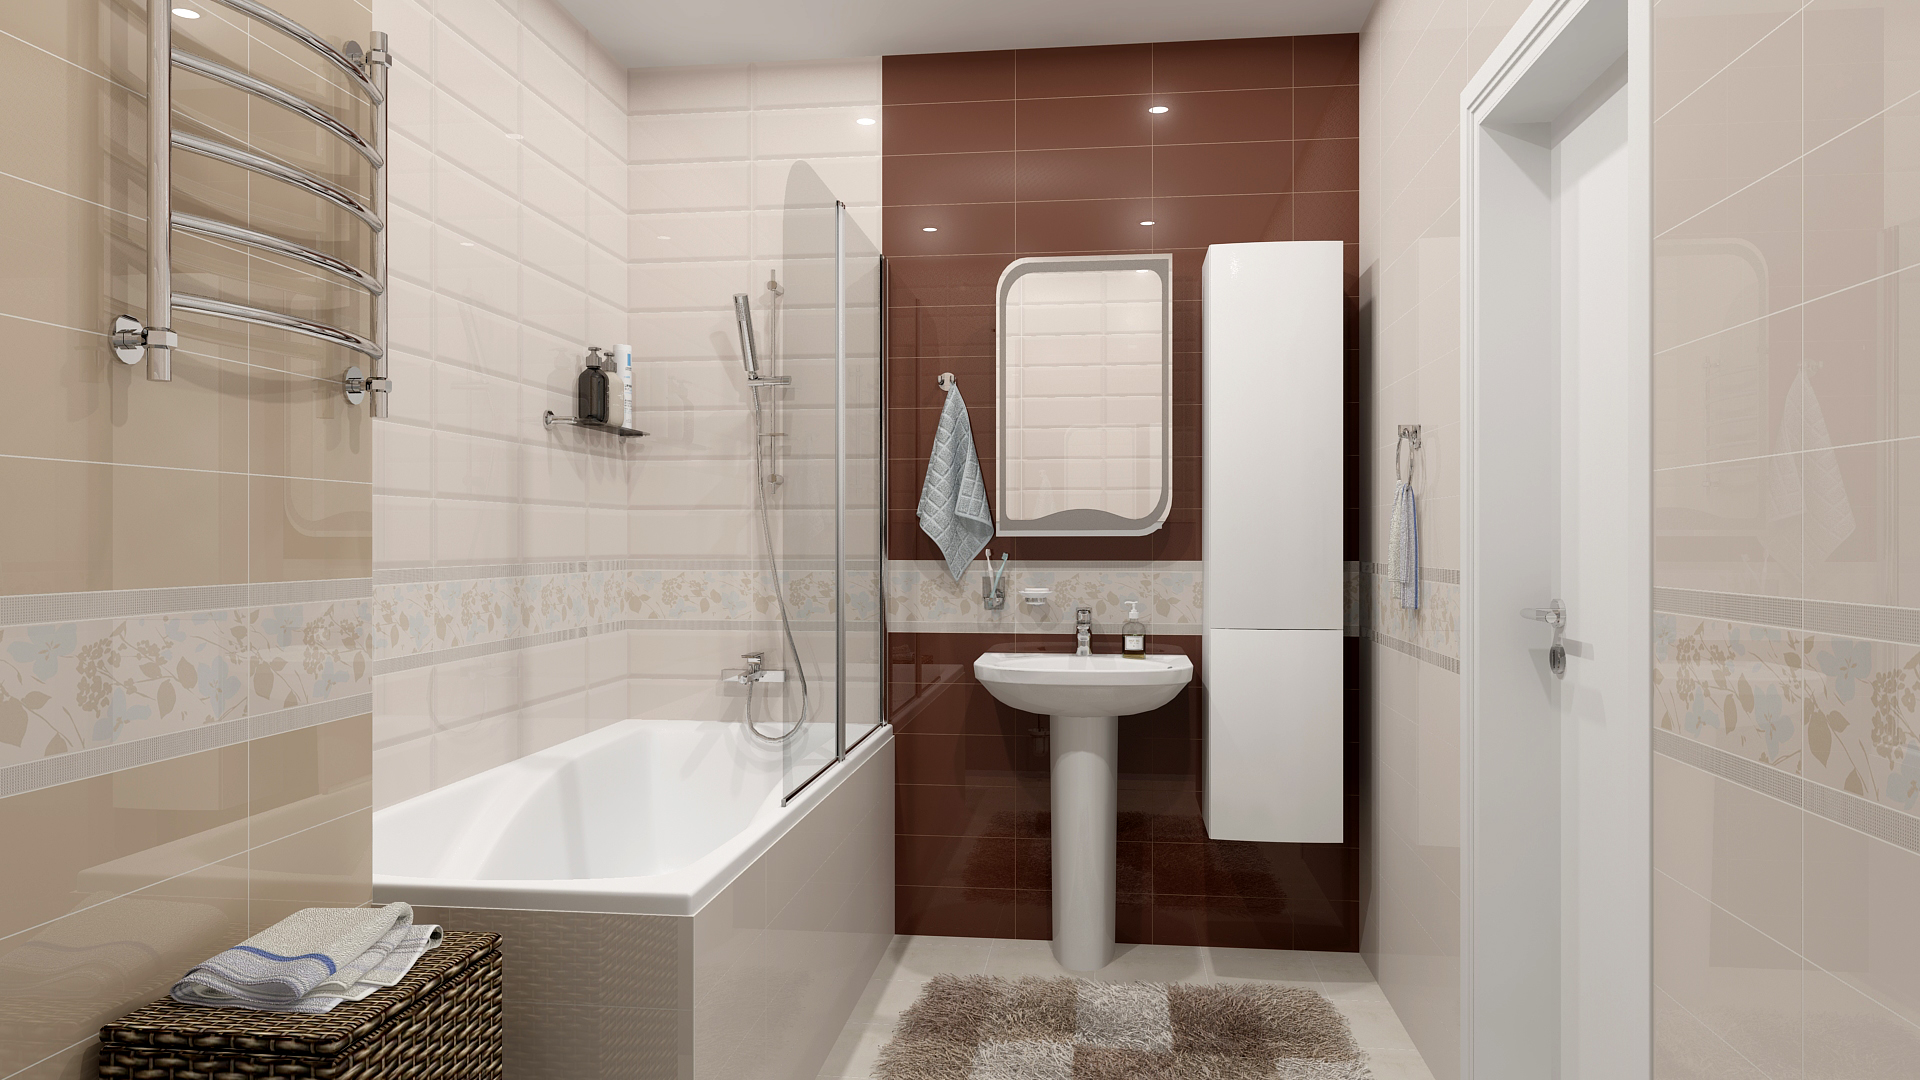 Ванная комната без плитки +55 фото идей и дизайна